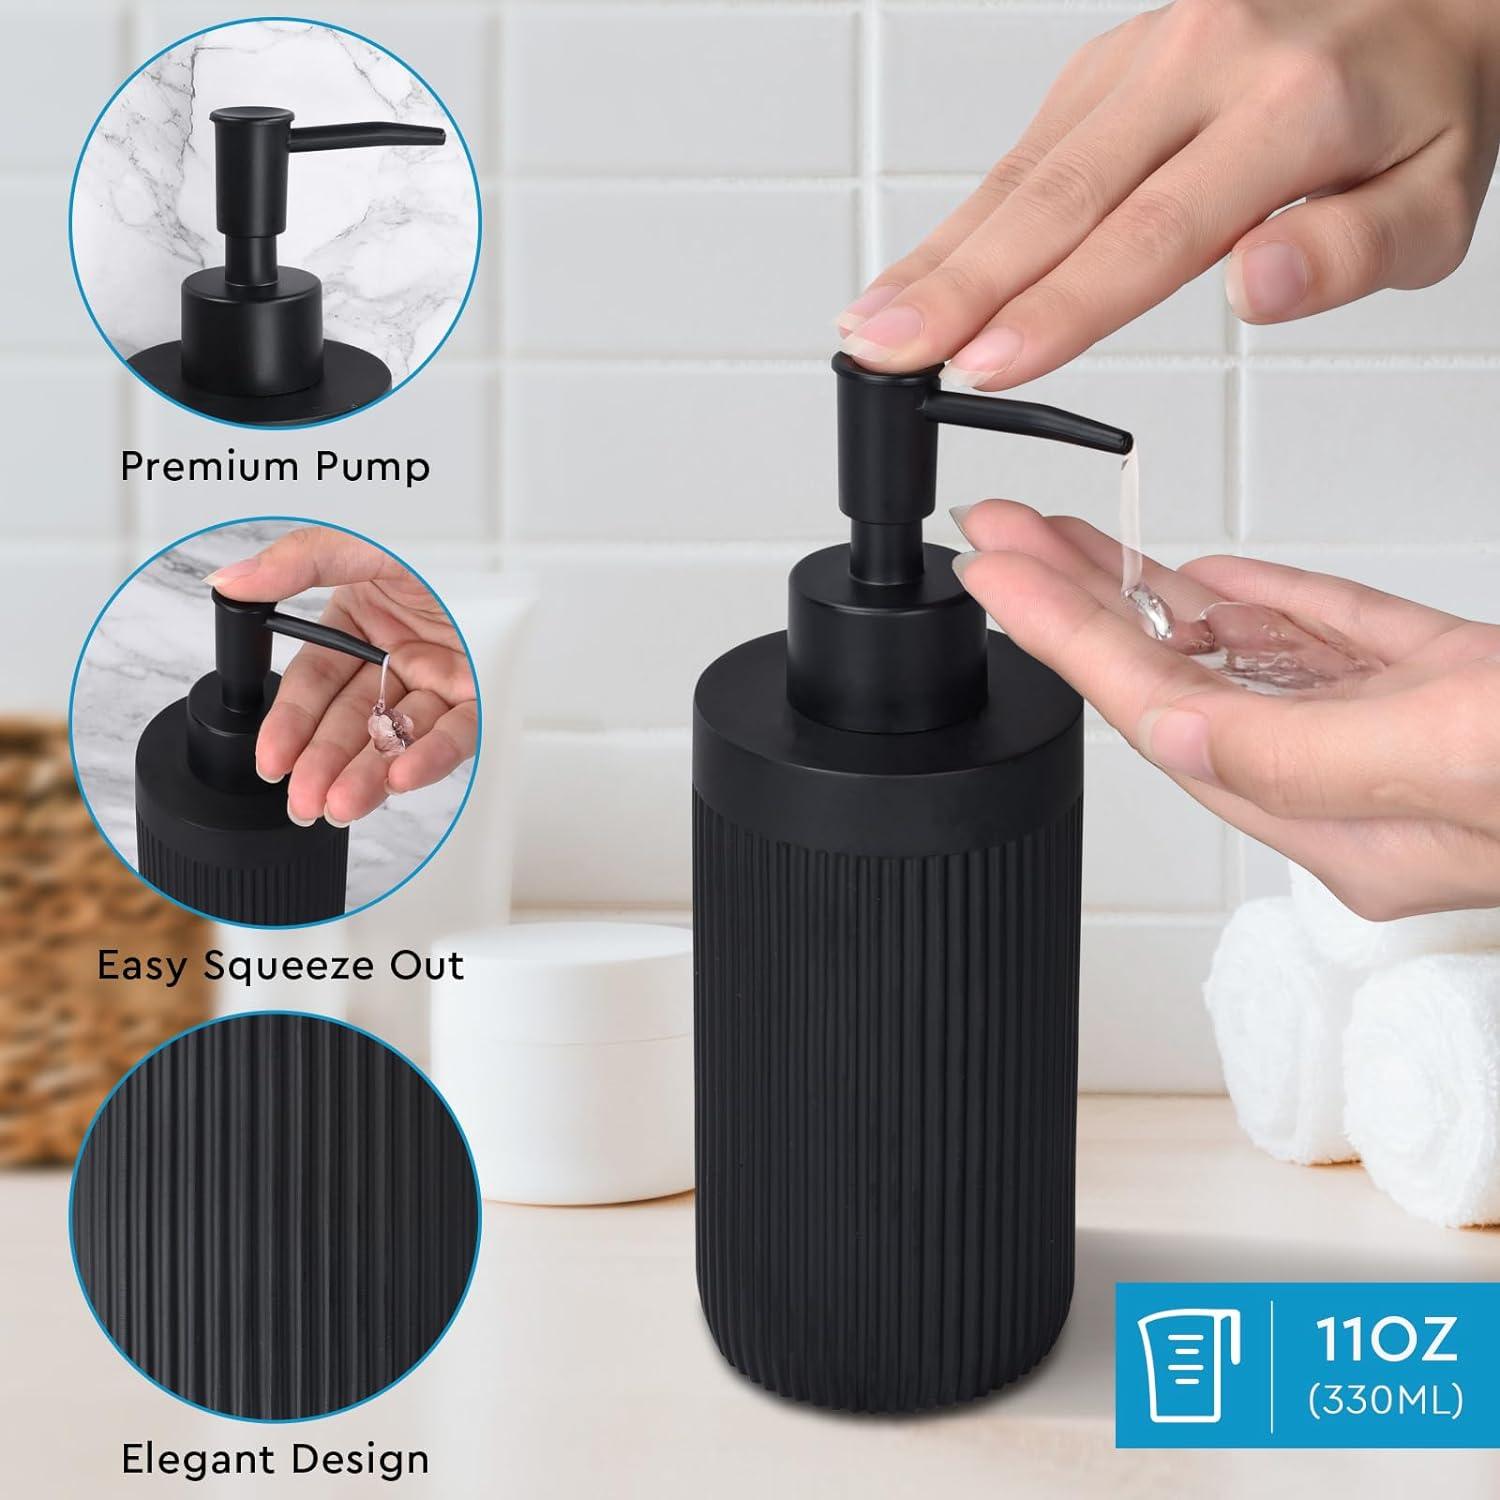  Dispensador de jabón líquido recargable para manos, accesorios  de baño, juego de cerámica – Kit de suministros de baño de 5 piezas,  incluye dispensador de jabón de loción, soporte para cepillos